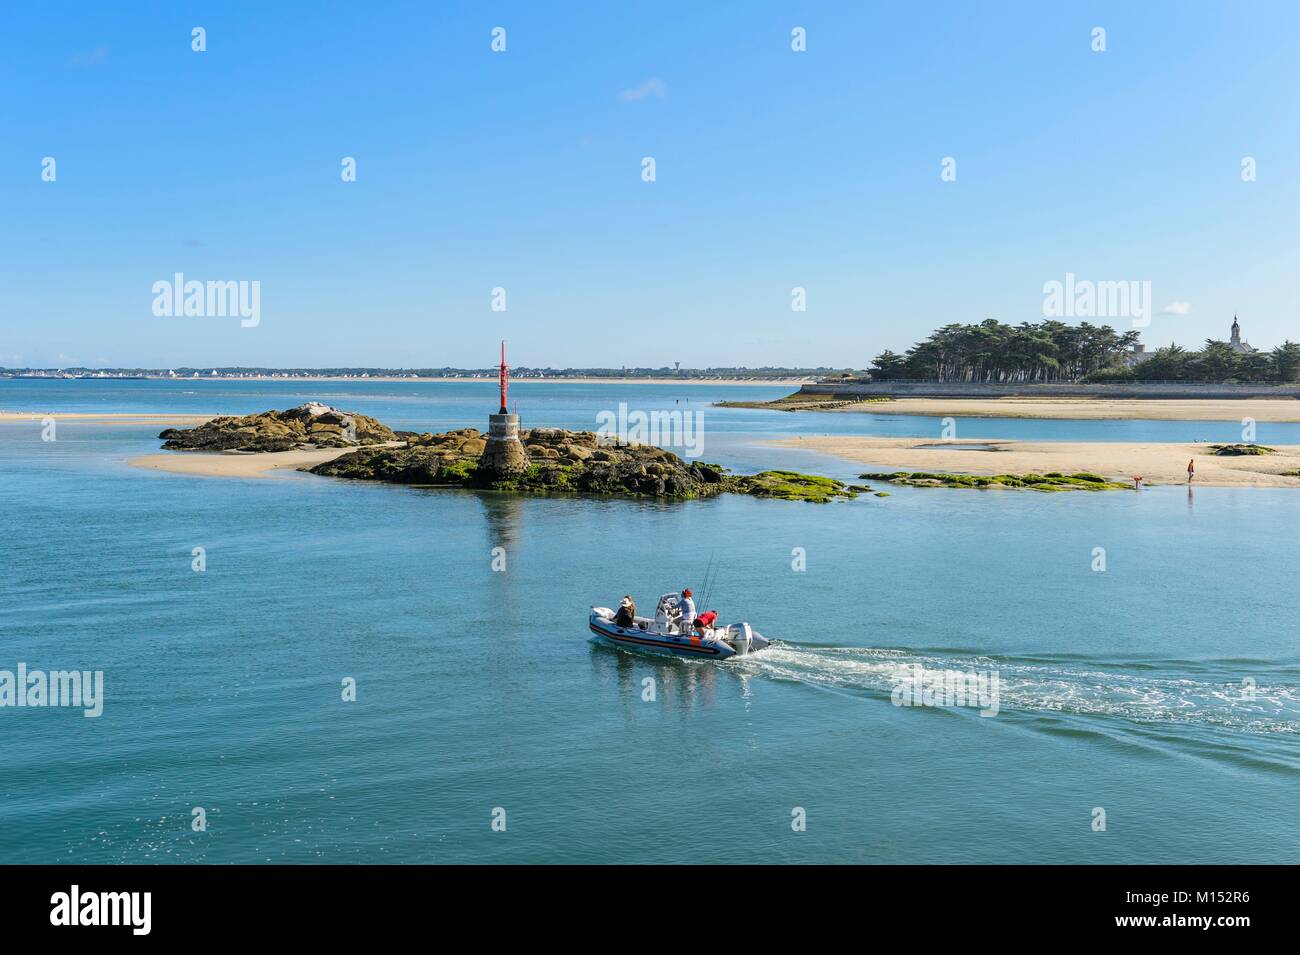 France, Loire Atlantique, Guerande peninsula, Le Croisic, Pen Bron channel Stock Photo